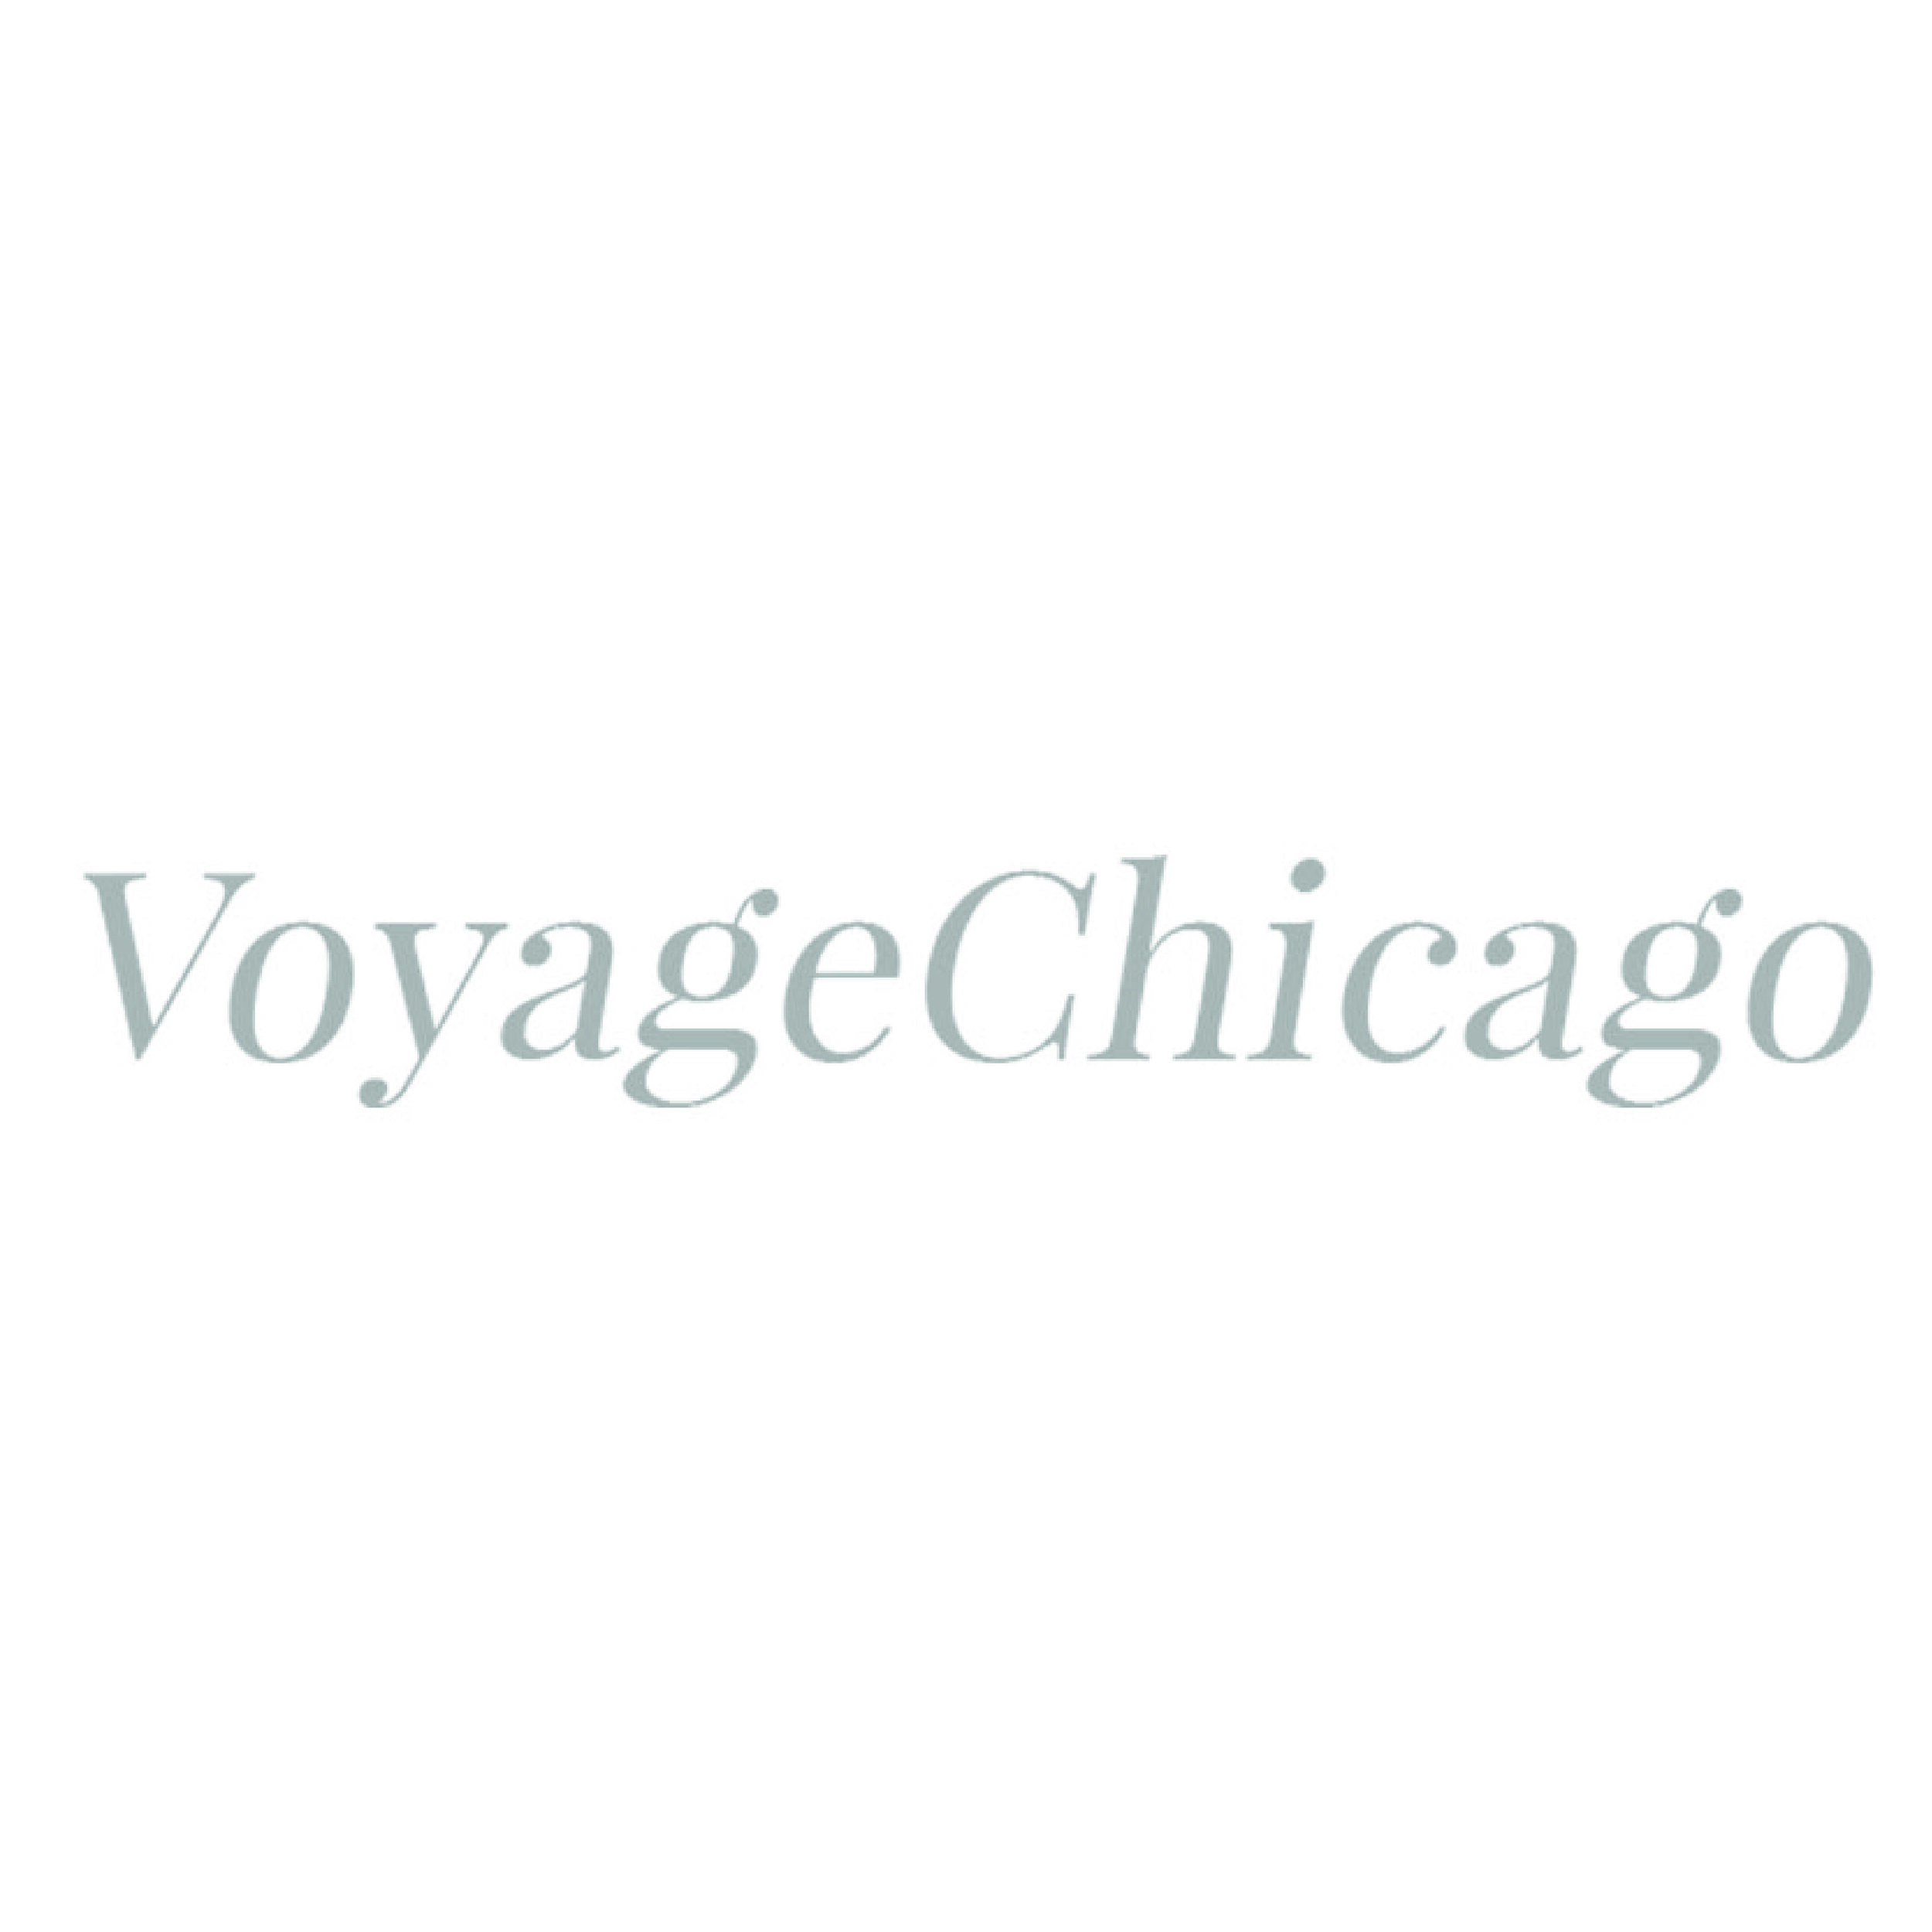 Voyage Chicago-01.jpg